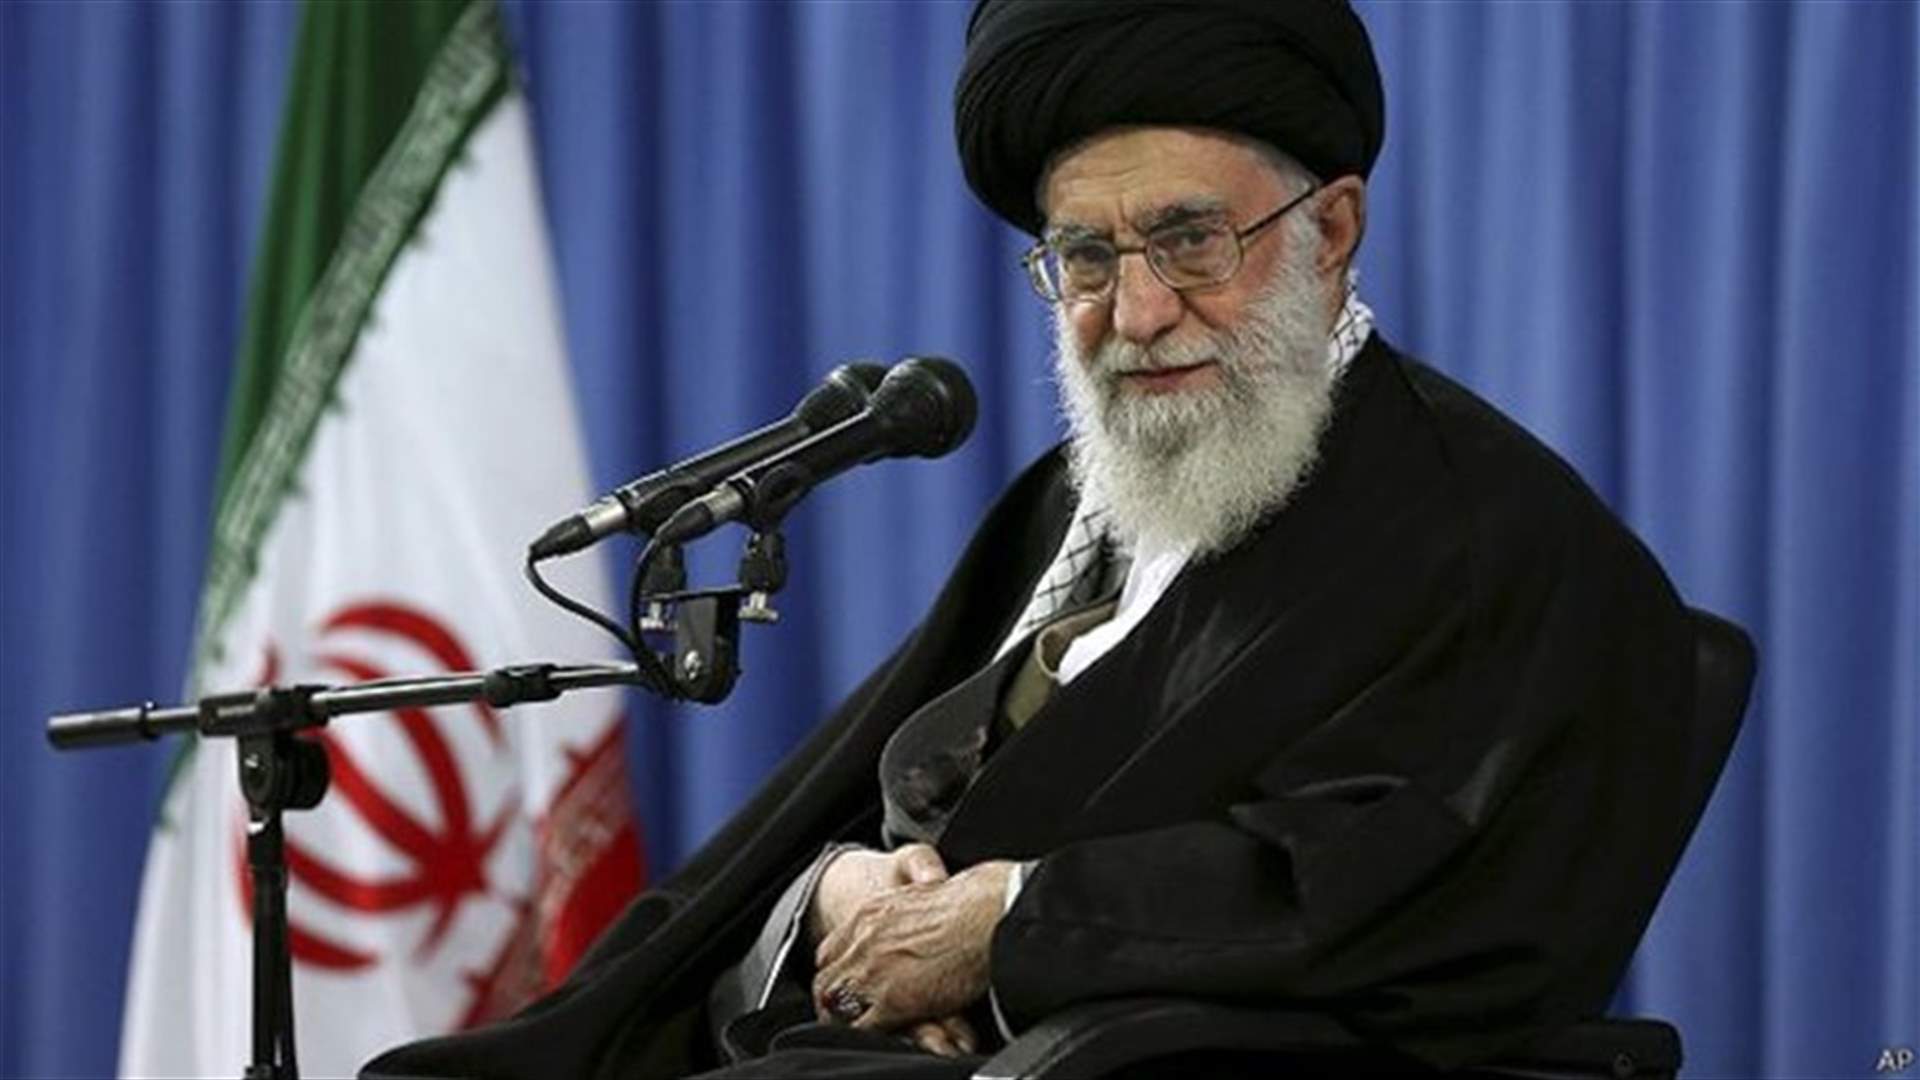 خامنئي: على رئيس إيران المقبل الحد من ارتباطه بالغرب